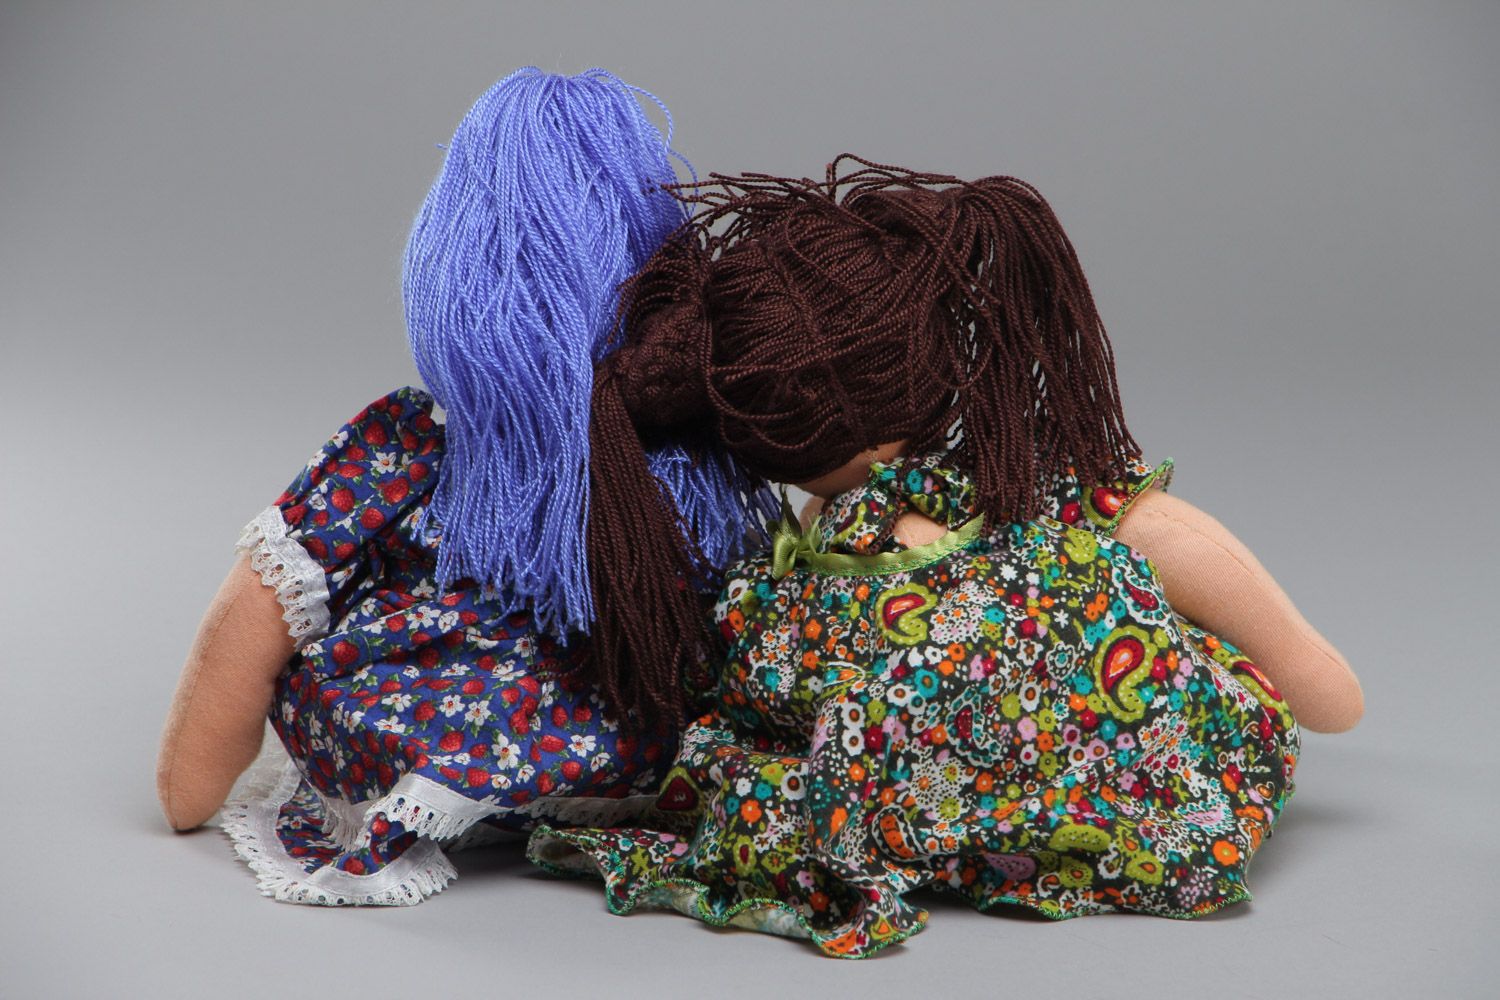 Puppen handgemacht Designer Puppen aus Stoff Deko Puppen Spielzeug Geschenk foto 4